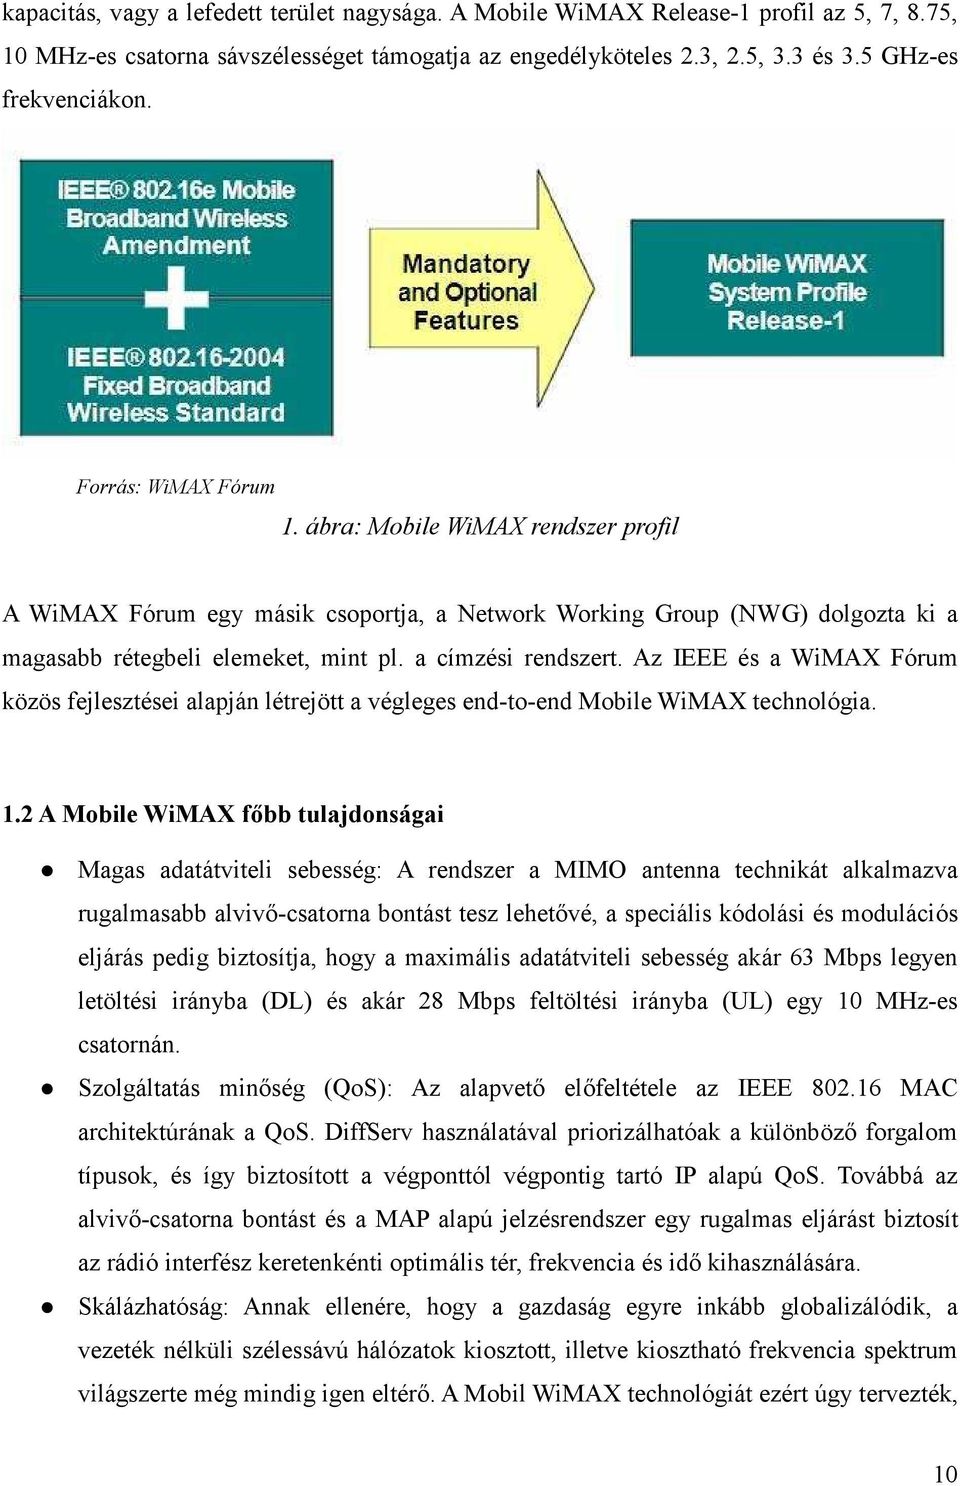 ábra: Mobile WiMAX rendszer profil A WiMAX Fórum egy másik csoportja, a Network Working Group (NWG) dolgozta ki a magasabb rétegbeli elemeket, mint pl. a címzési rendszert.